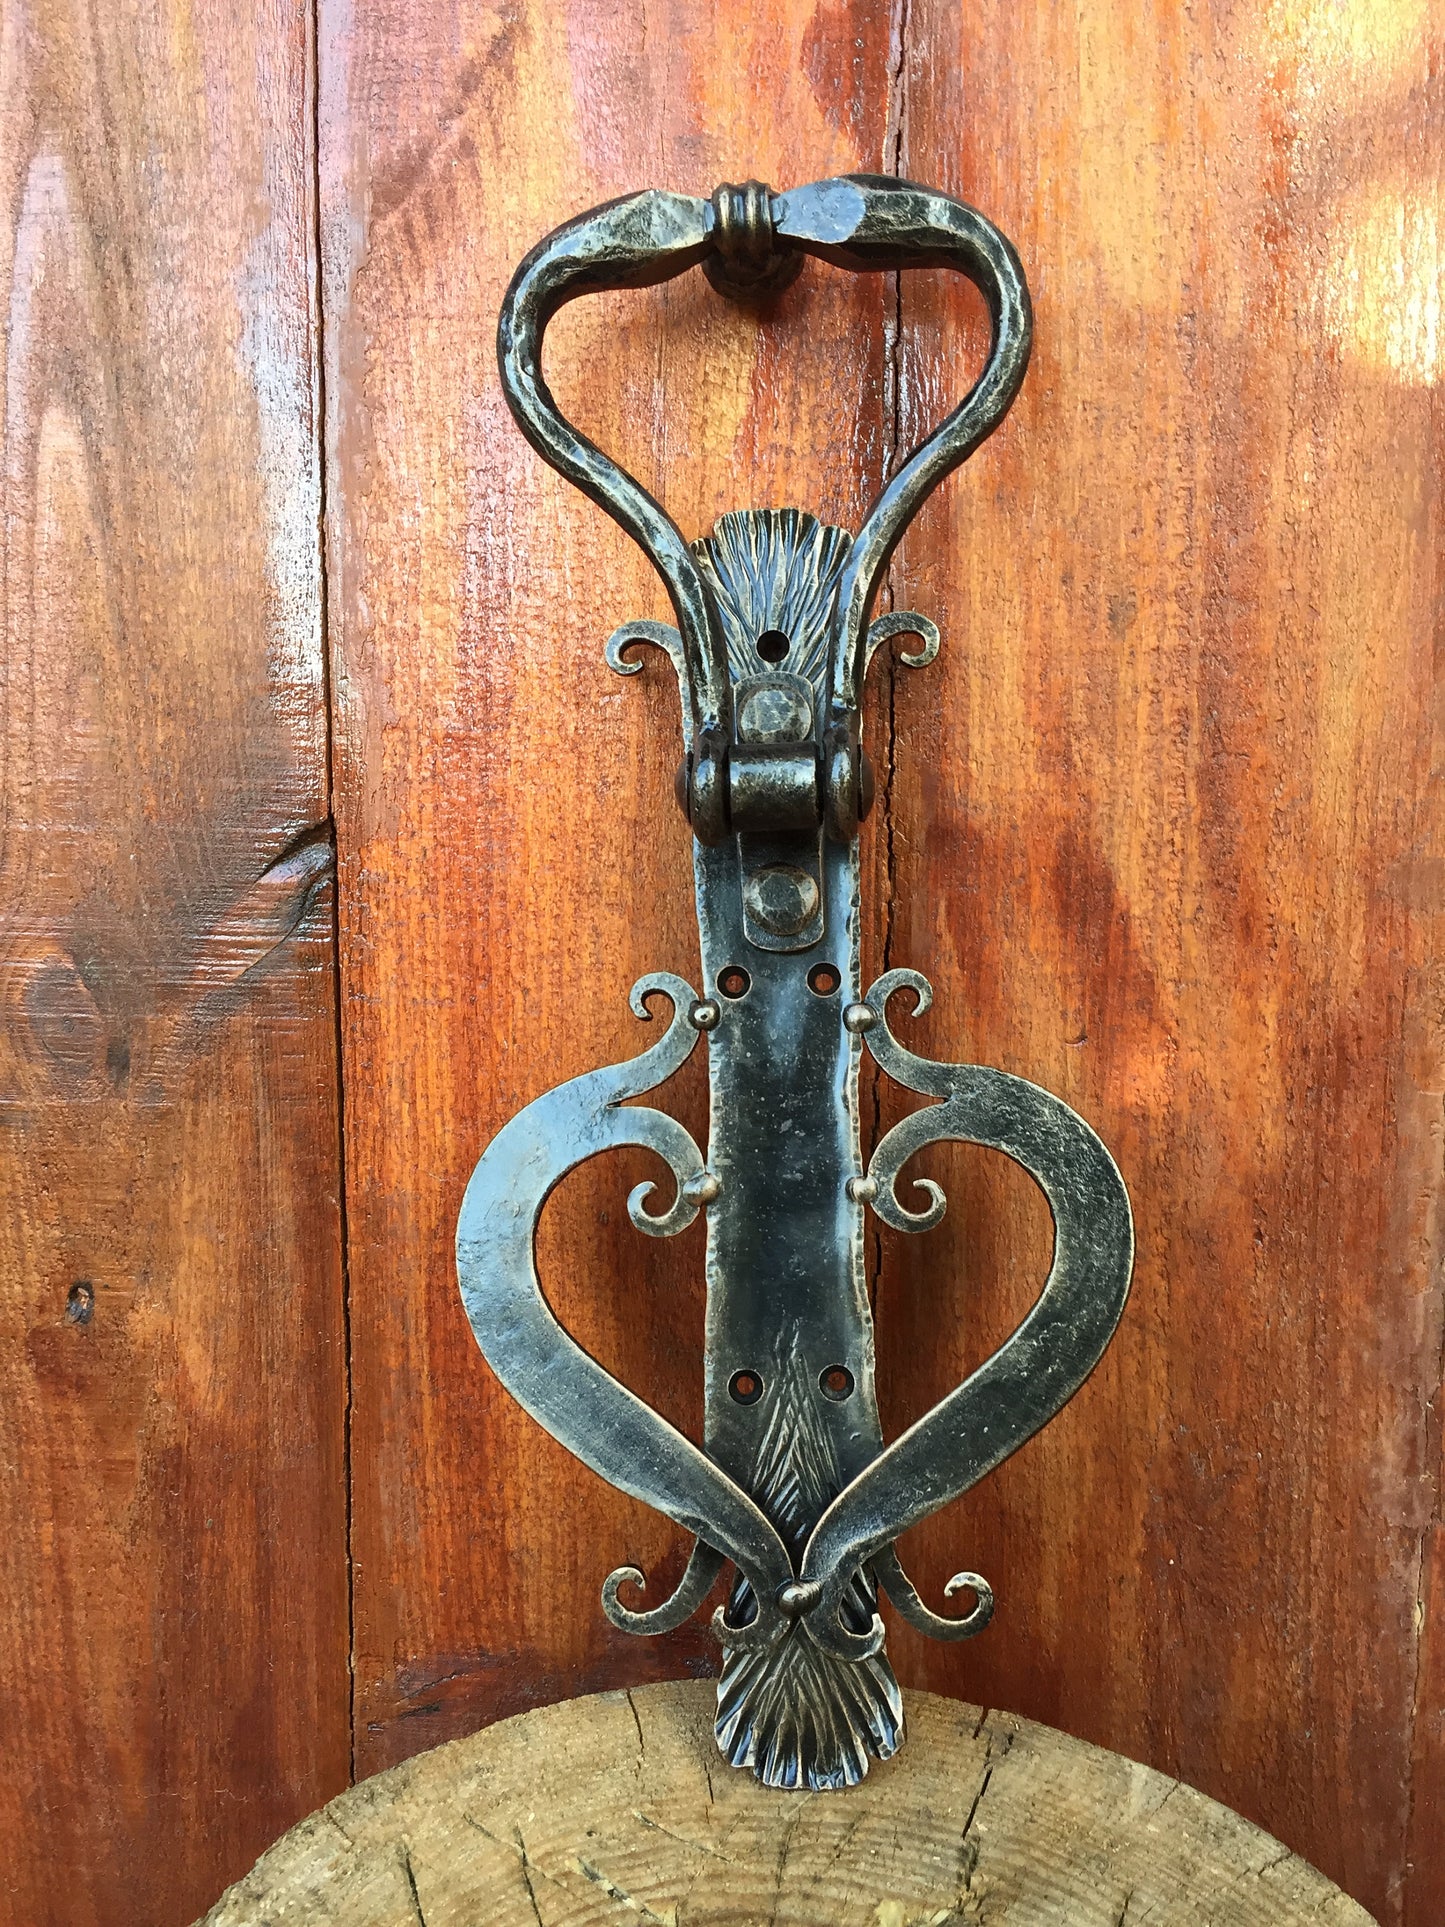 Engraved door knocker, personalized door handle, custom door handle, door puller, pull ring handle, barn door handle, knobs and pulls